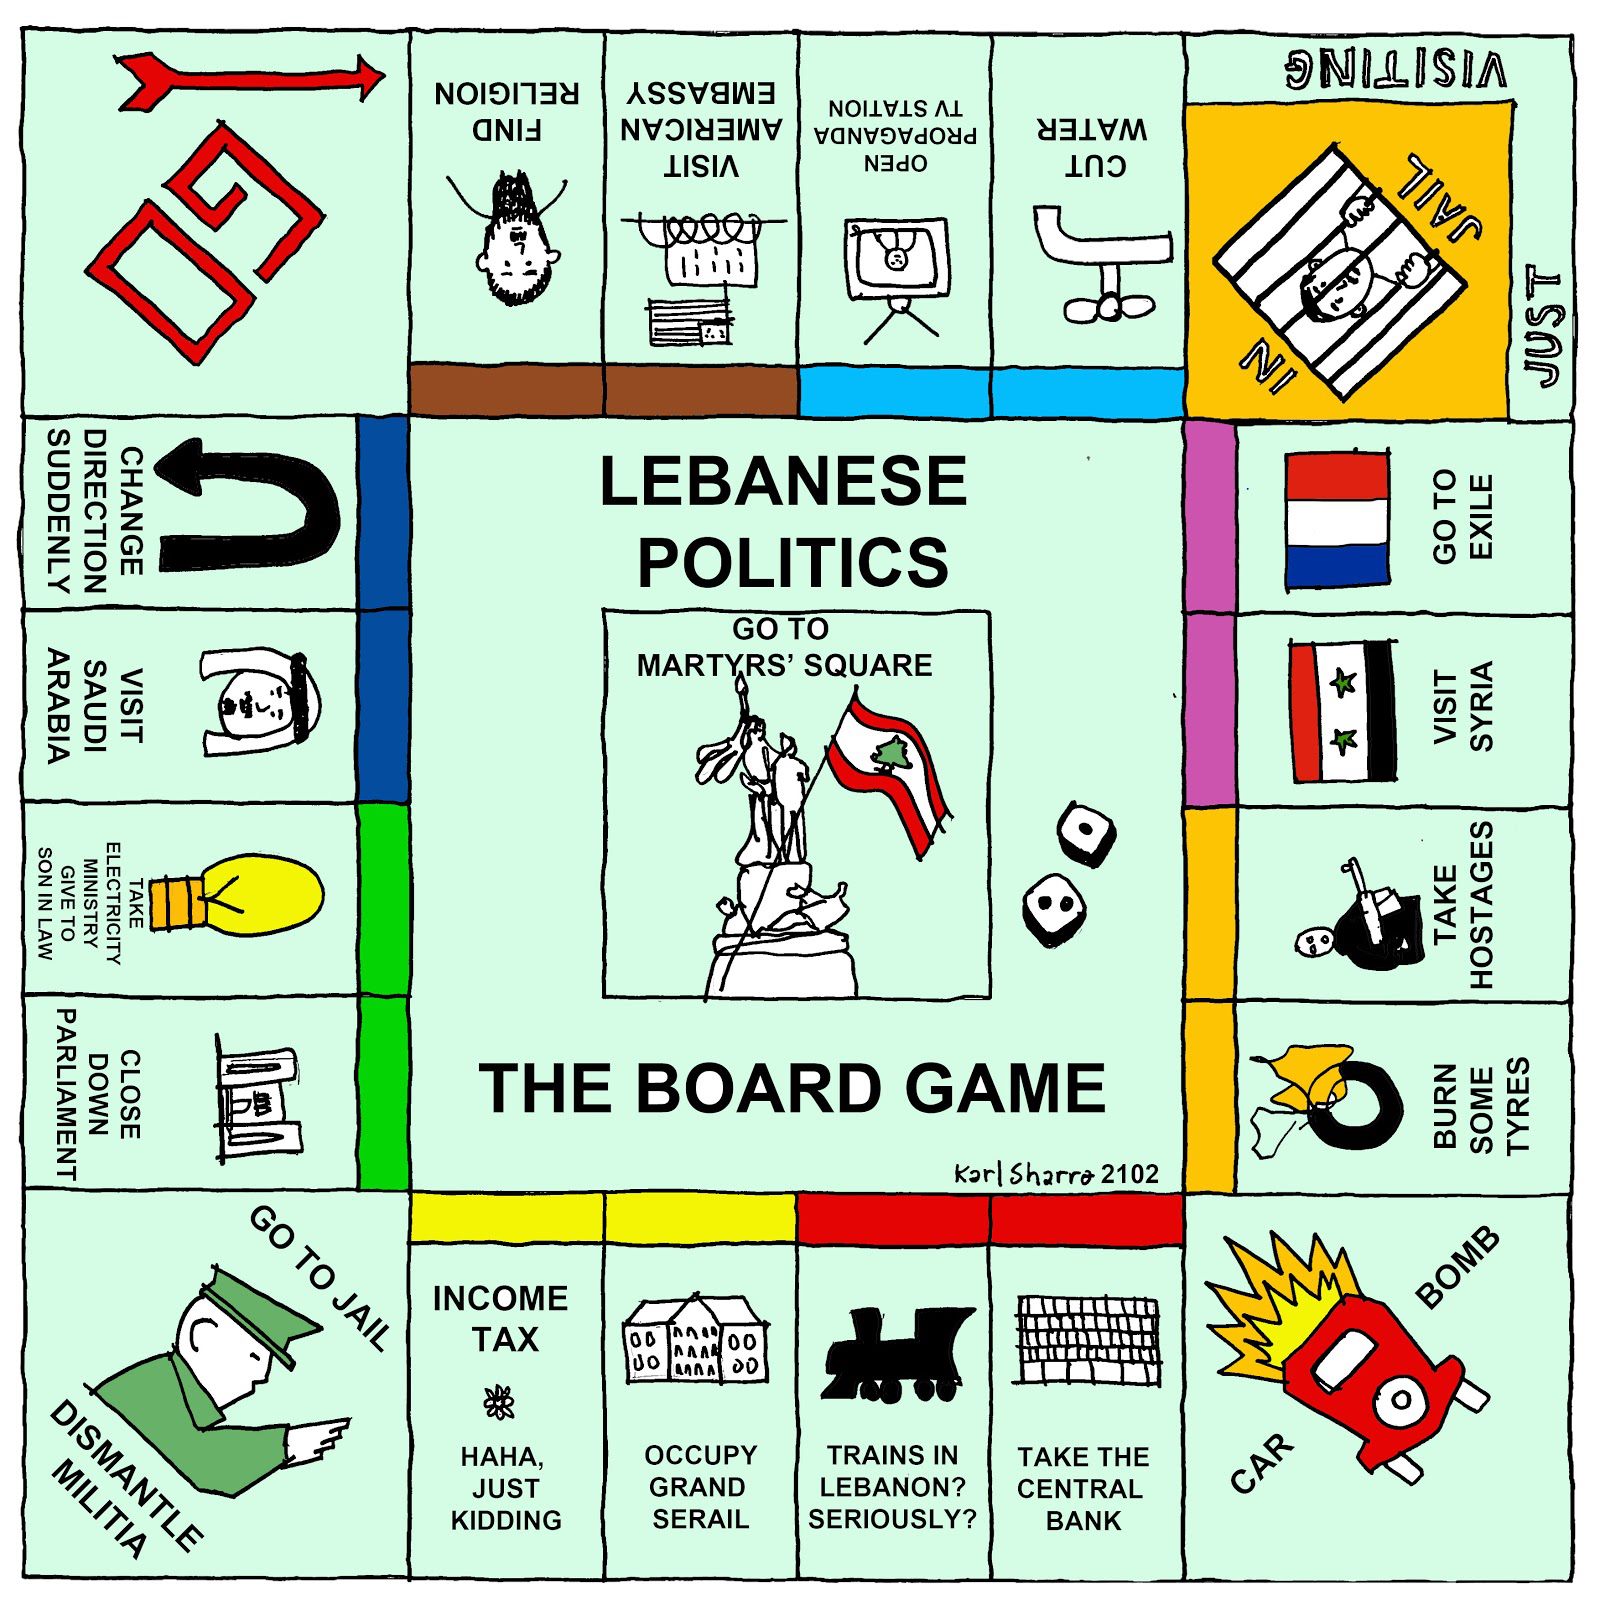 The Lebanese board game